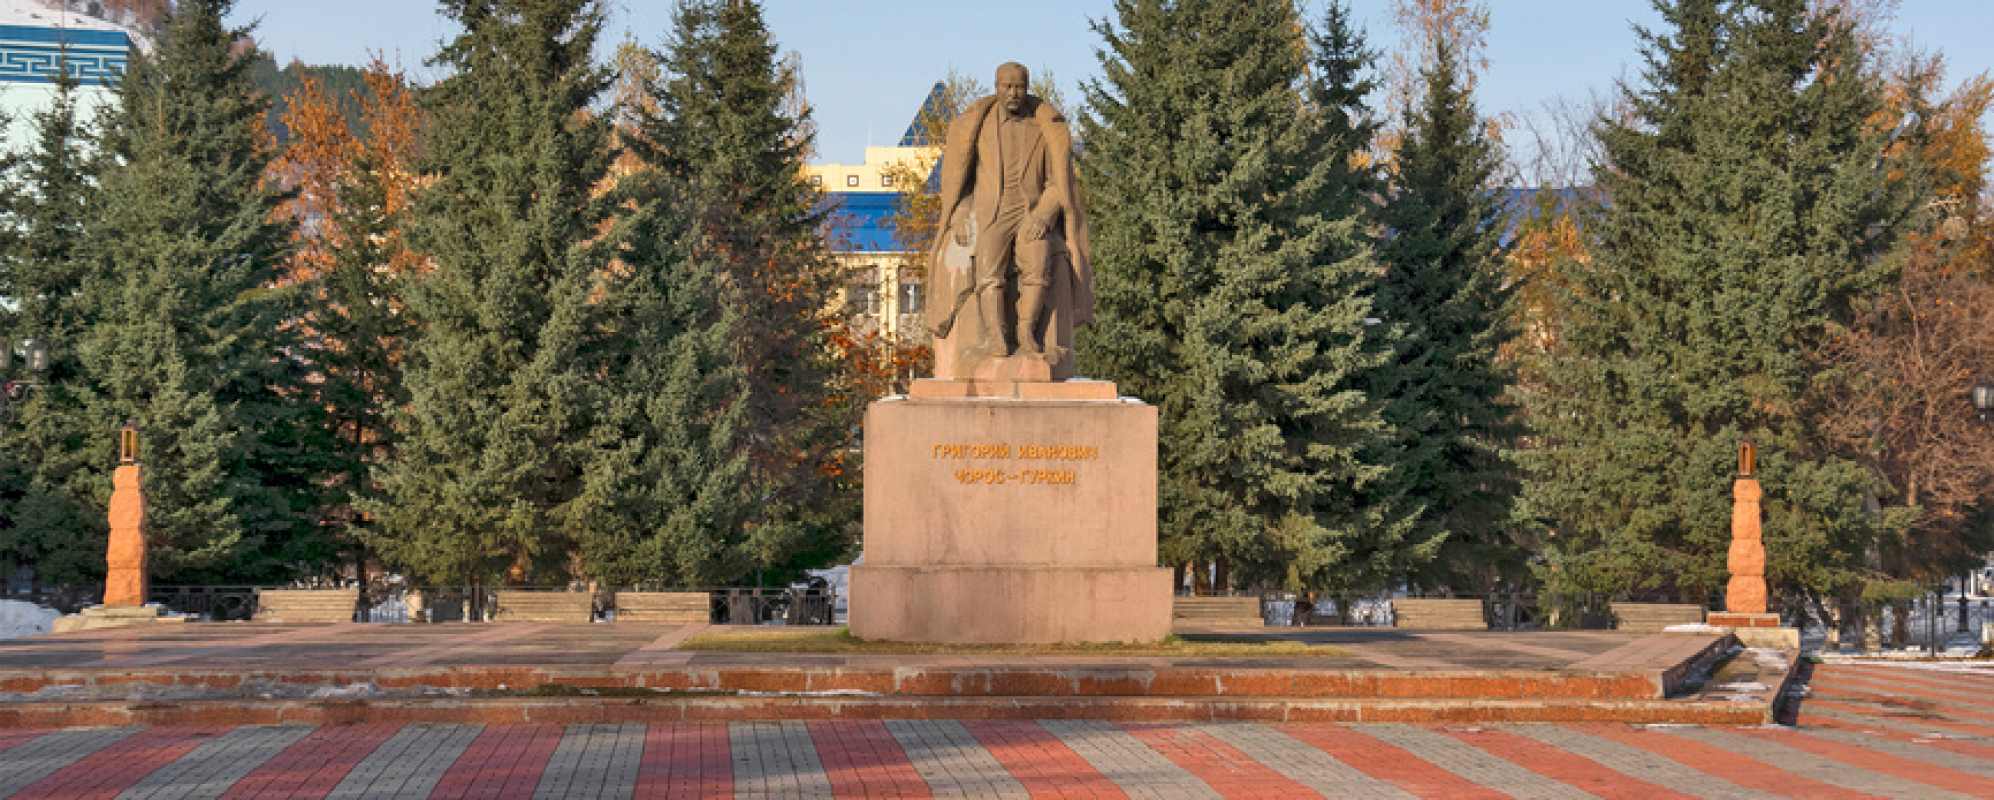 Фотографии достопримечательности Памятник Чорос-Гуркину